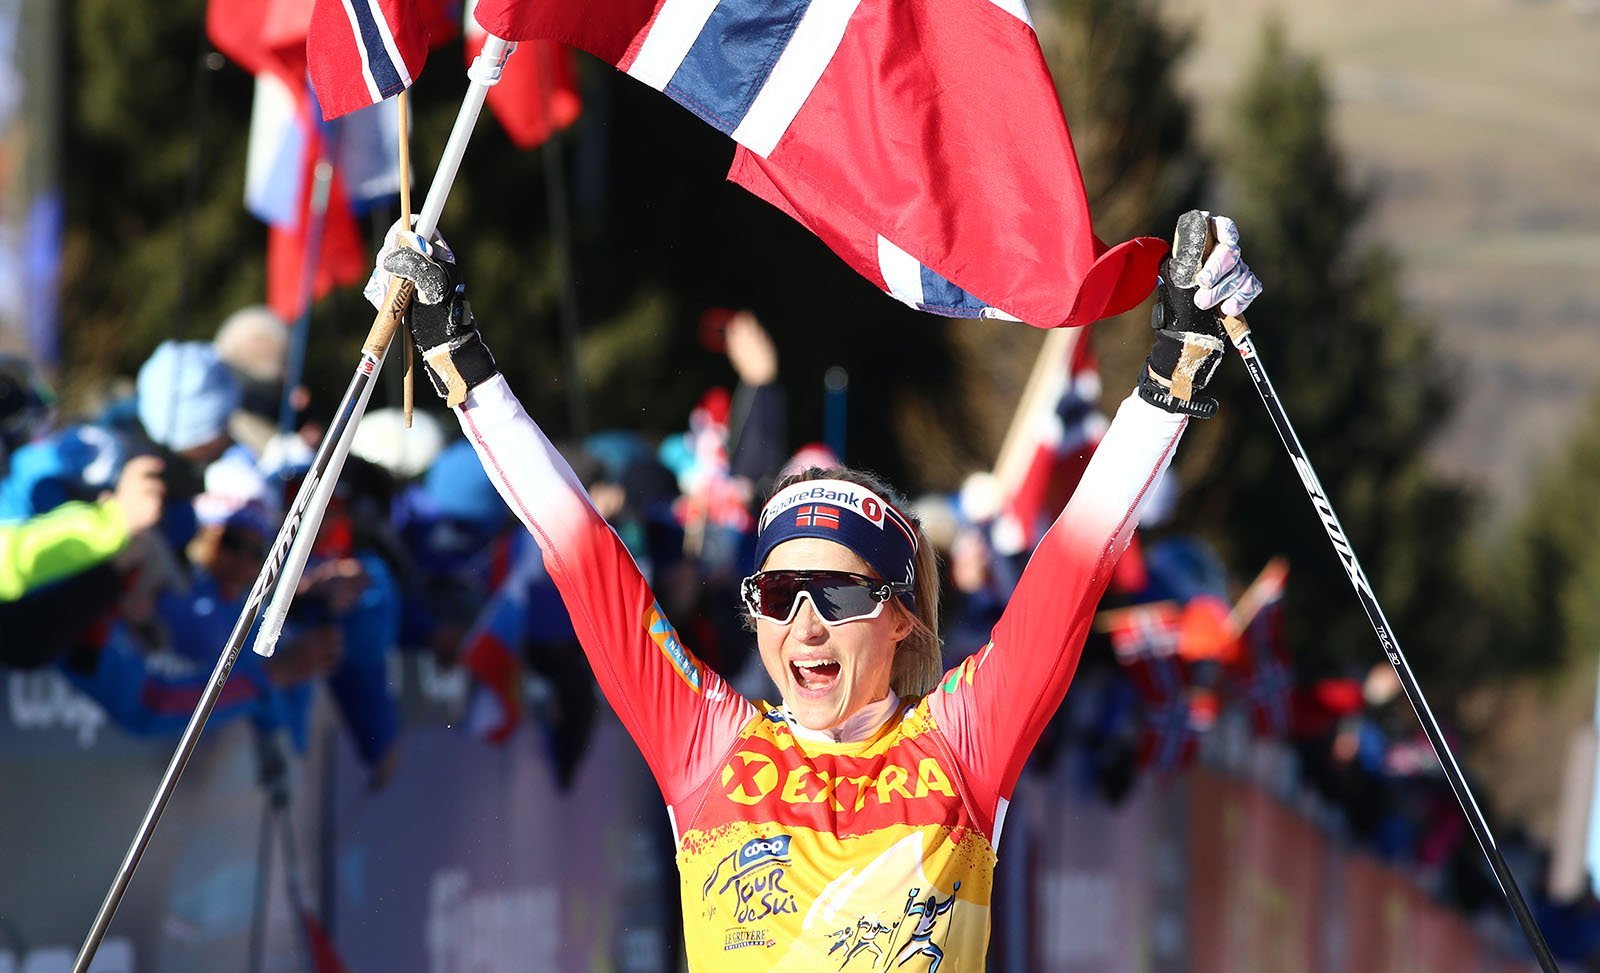 Therese Johaug Norwegian skier. Photo: Pierre Teyssot / Shutterstock.com.